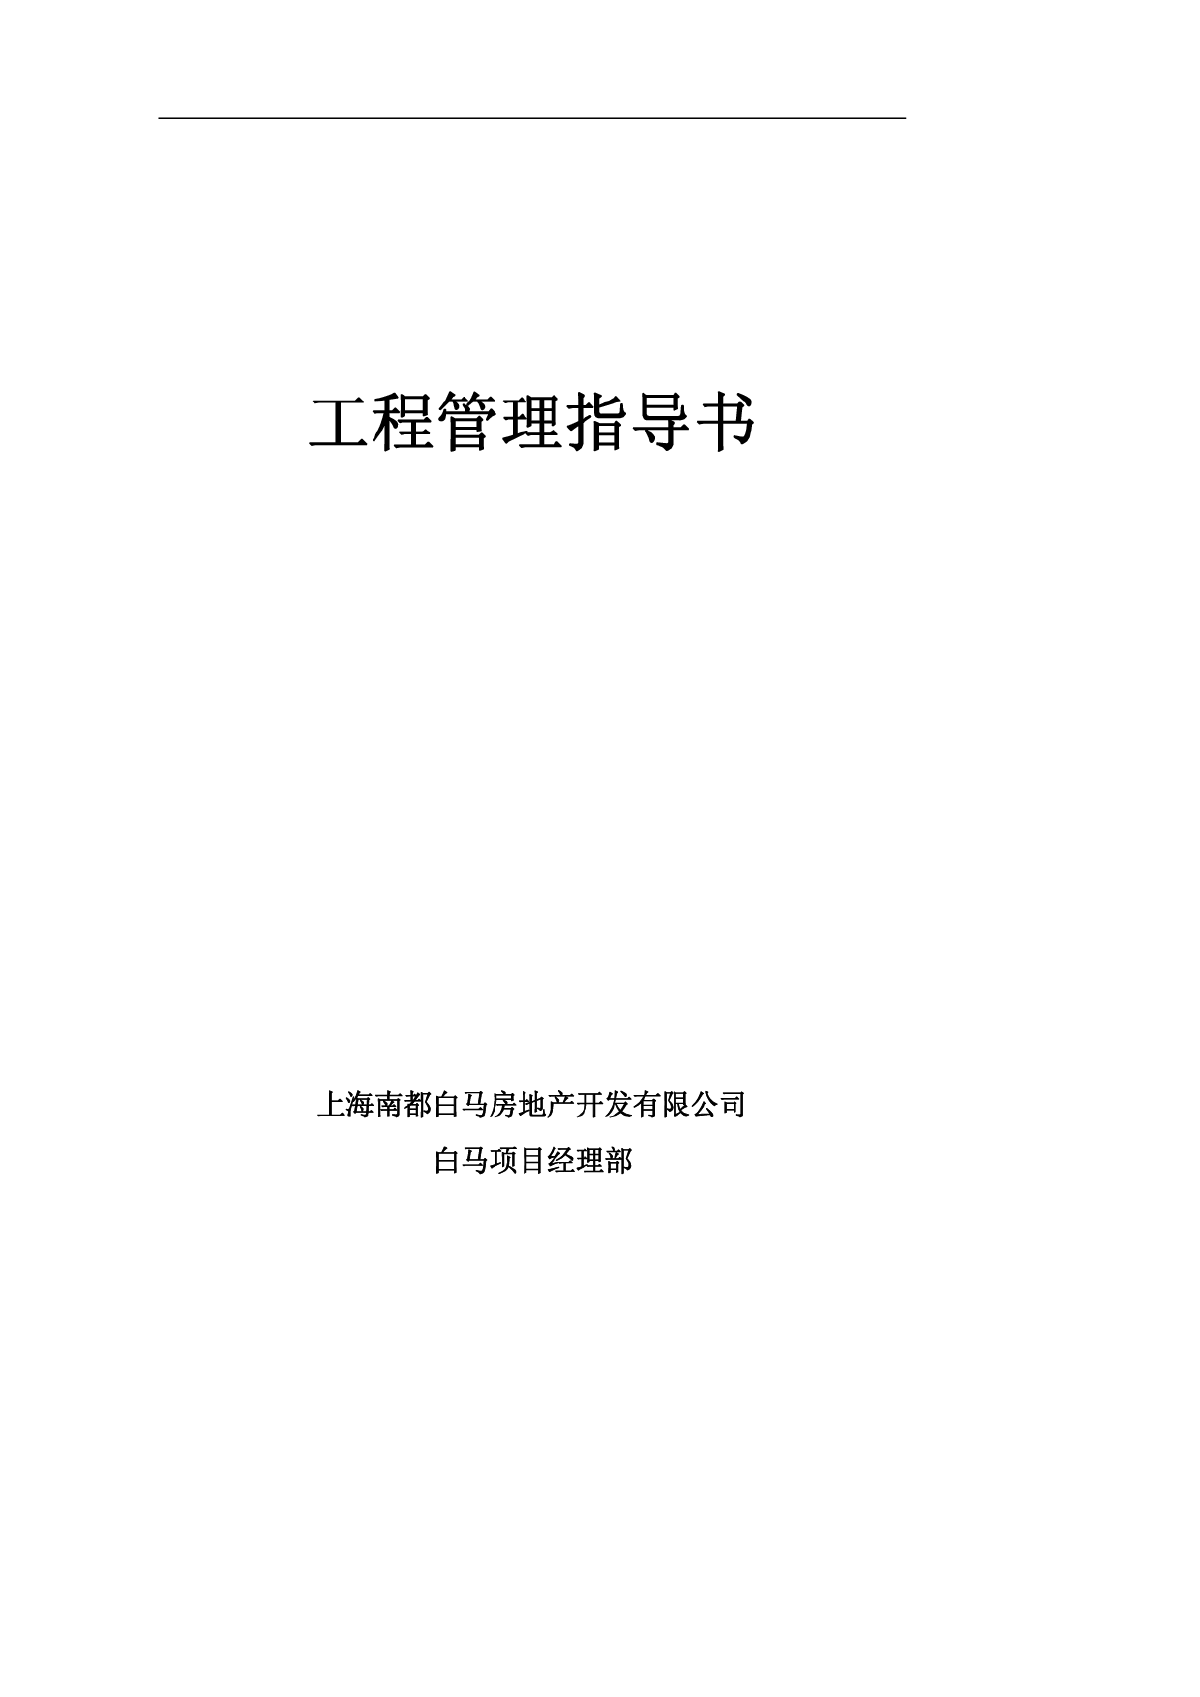 上海万科白马四期B项目工程管理指导书-图一